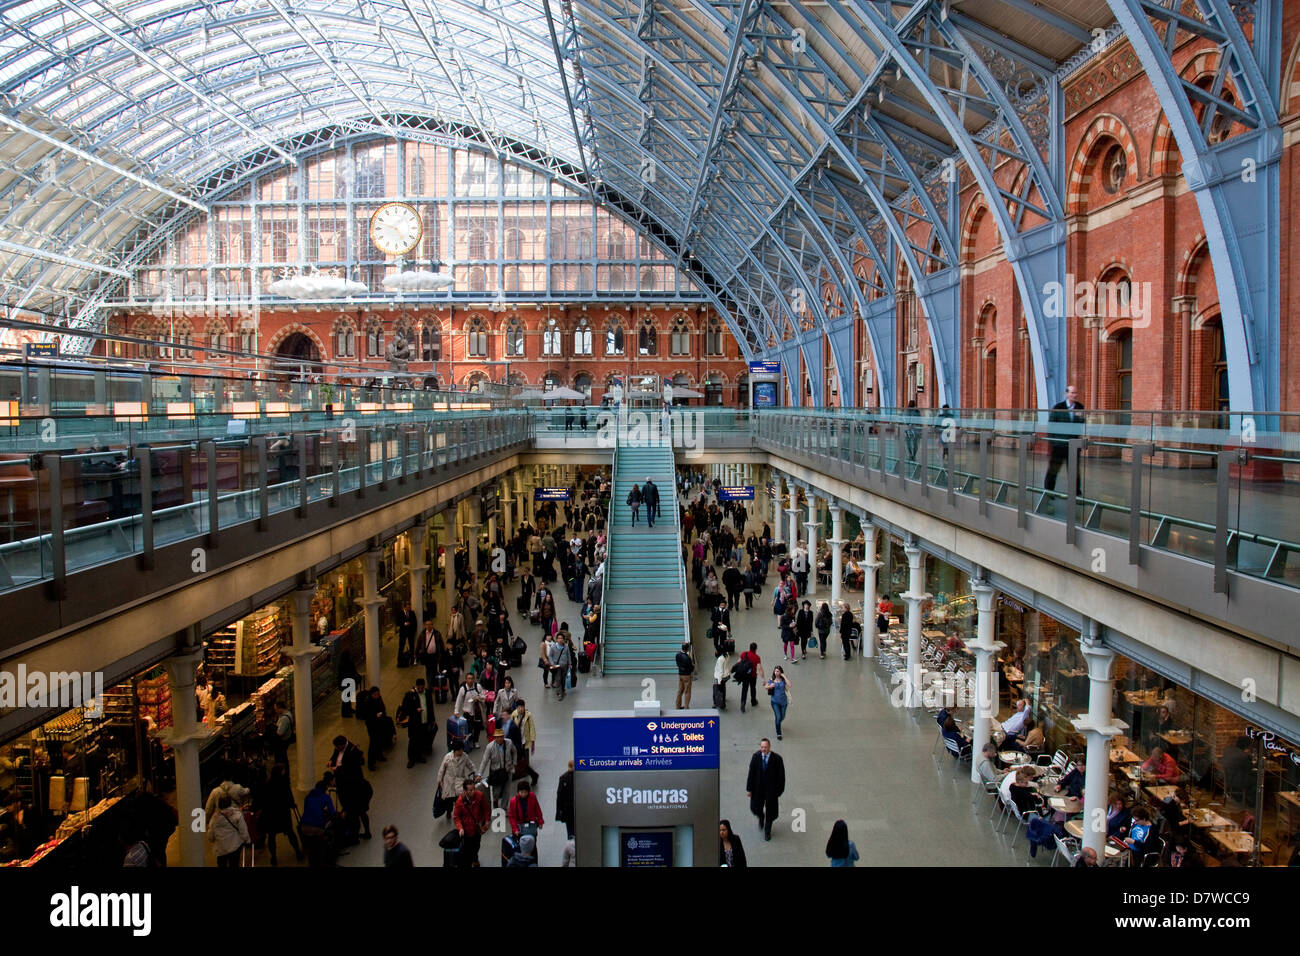 Stazione ferroviaria internazionale di St Pancras stazione ferroviaria di Londra, Inghilterra Foto Stock